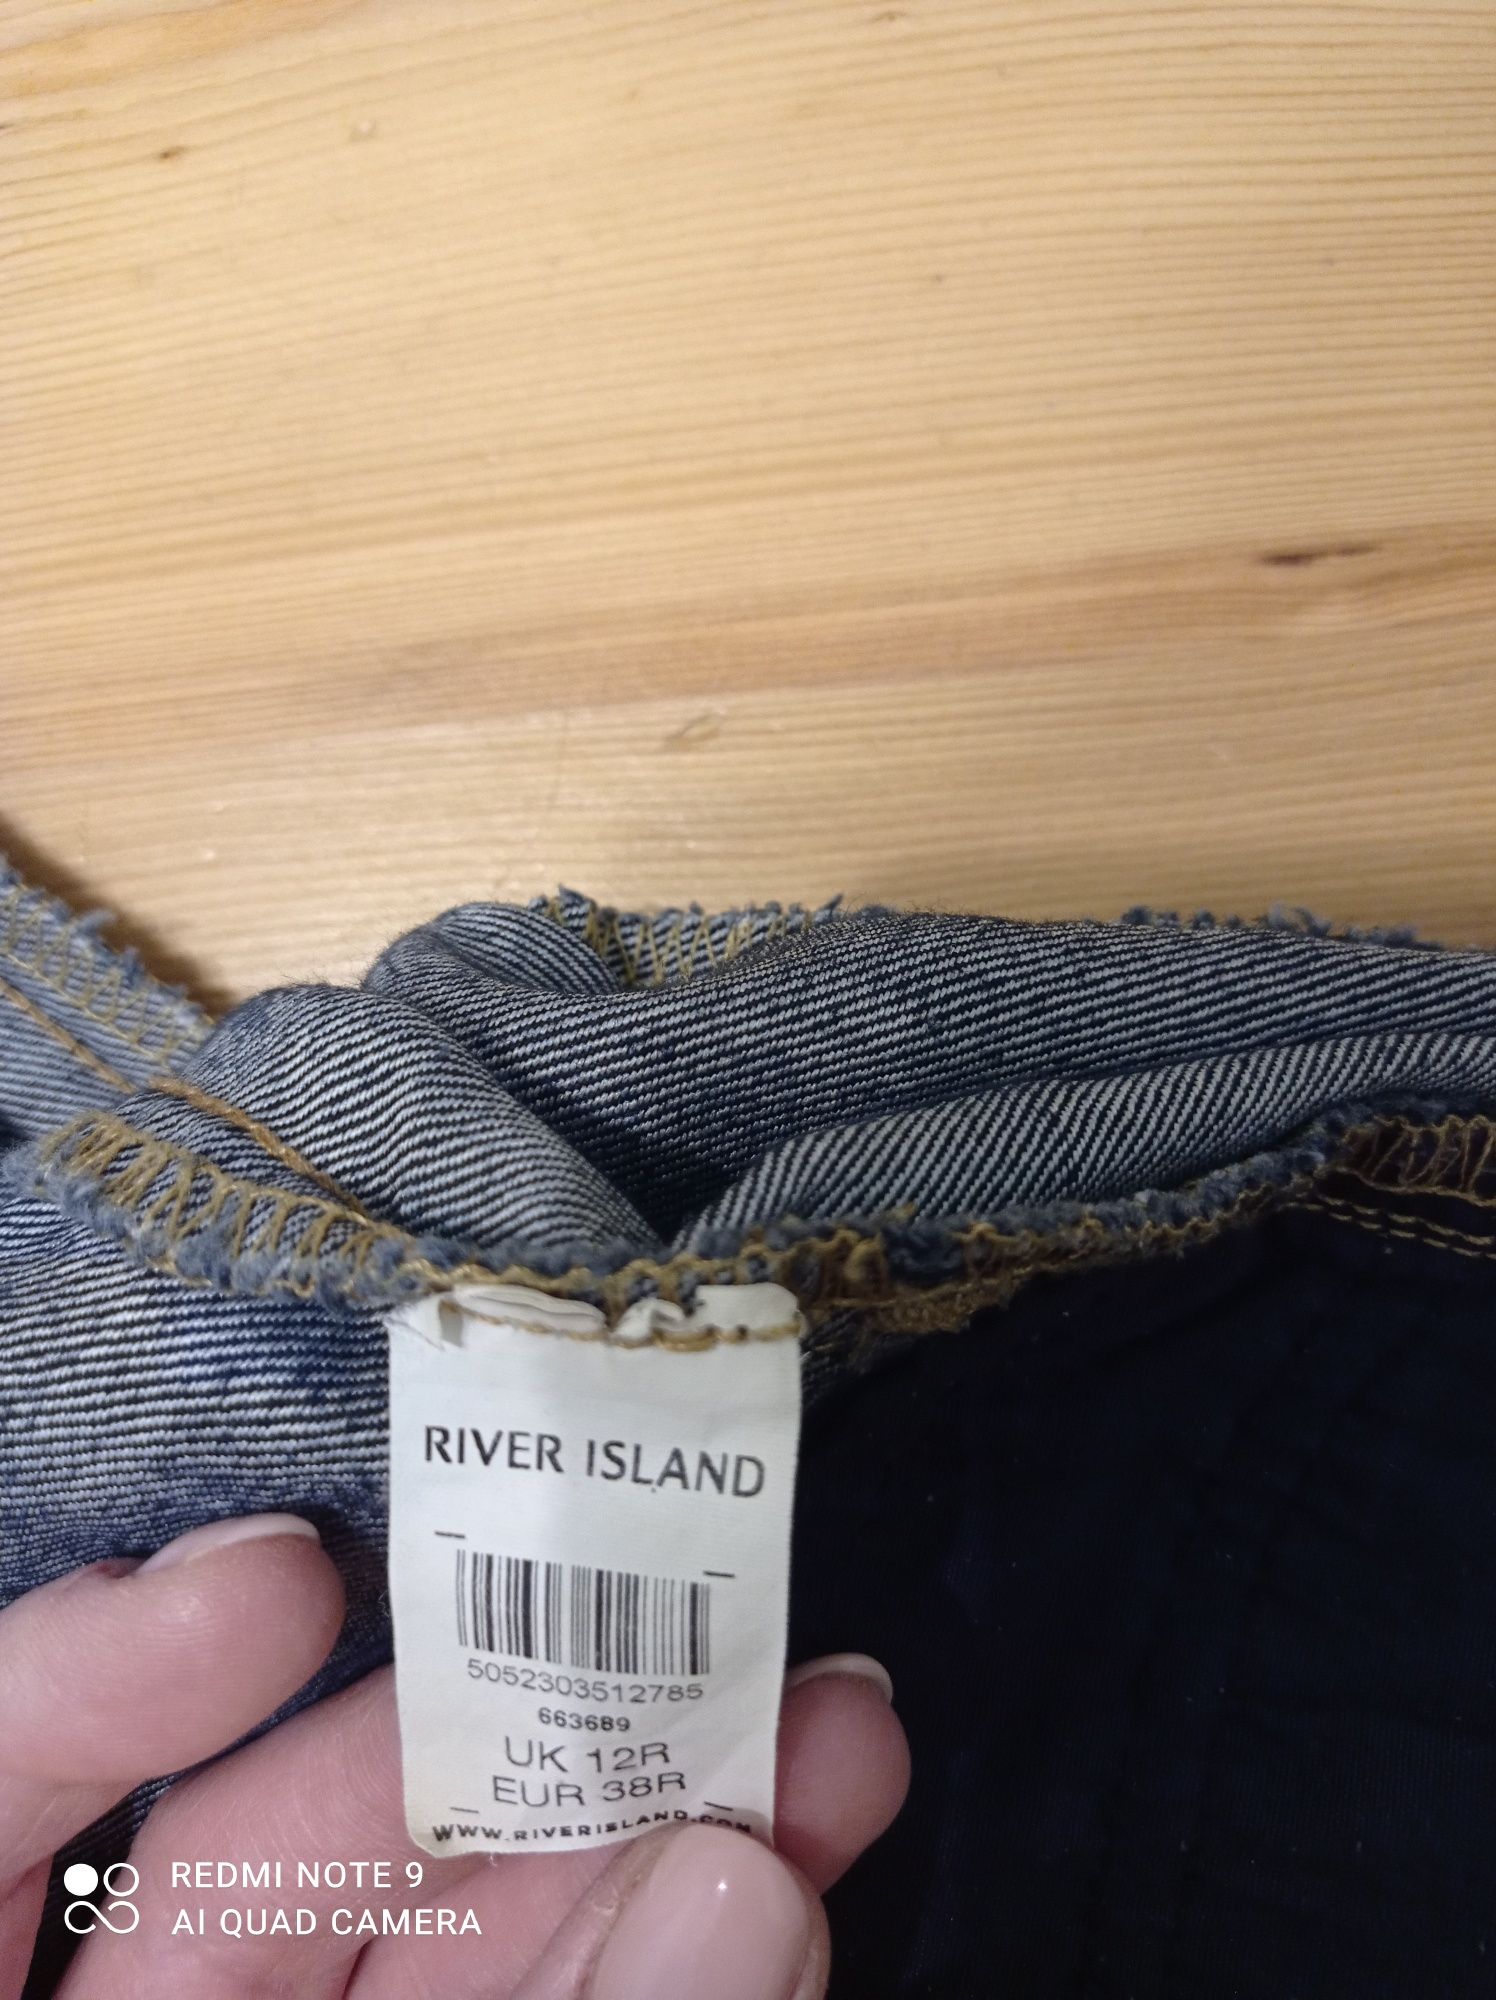 Spodnie jeansowe River Island rozmiar 38 R 12 UK